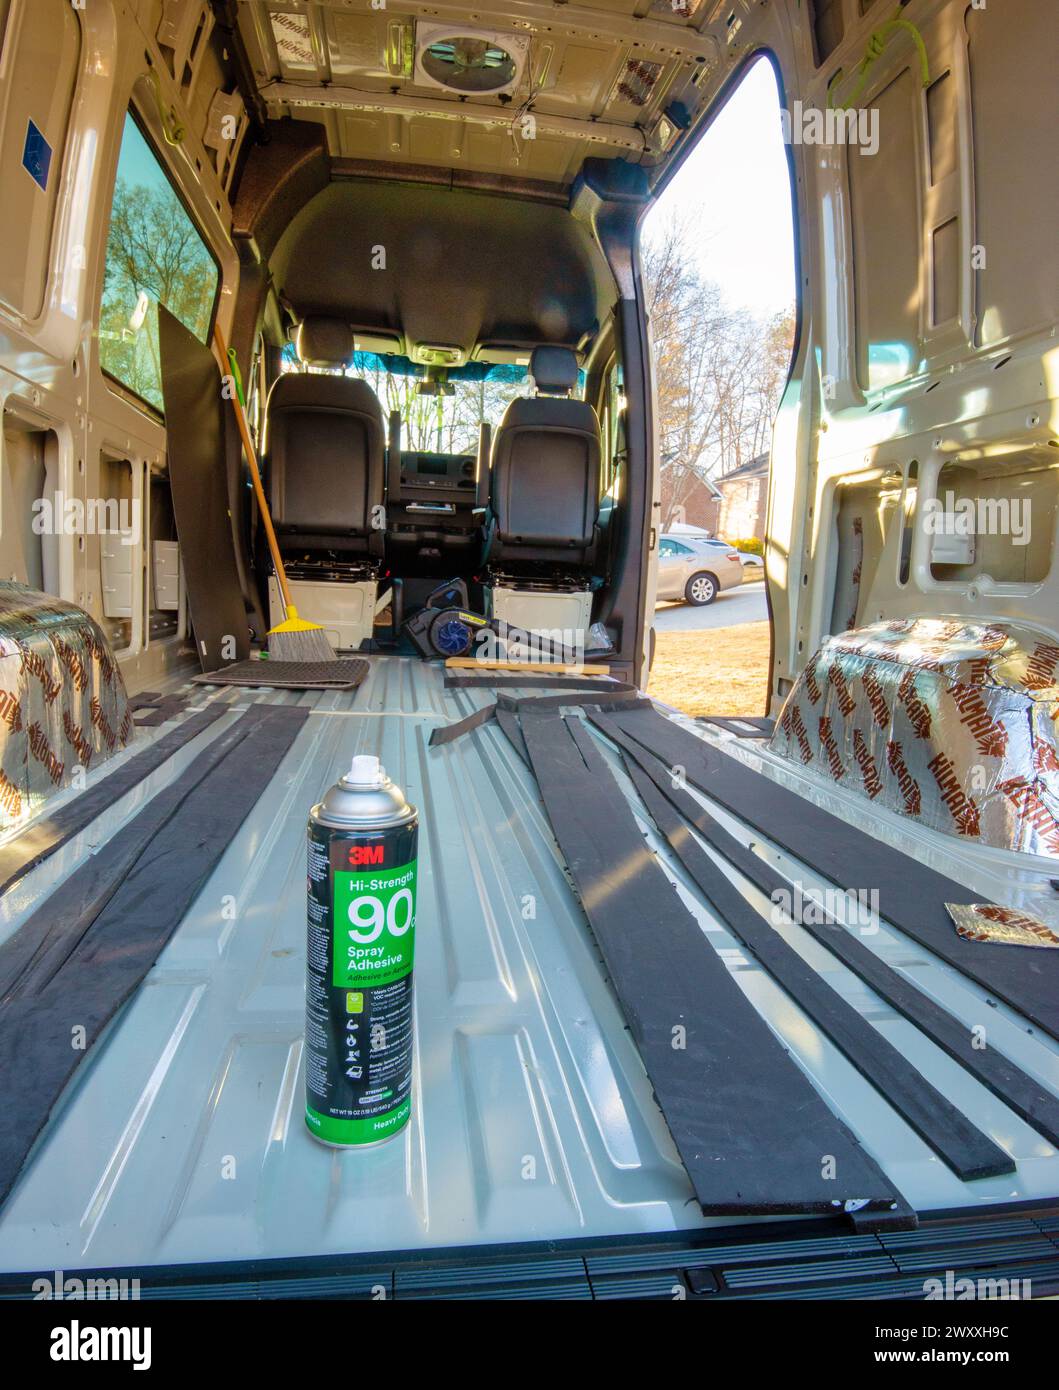 Materiale isolante in Thinsulate fissato al pavimento con adesivo spray nel furgone Mercedes Benz per il trasporto merci trasformato in un camper. Cary, Carolina del Nord. Foto Stock